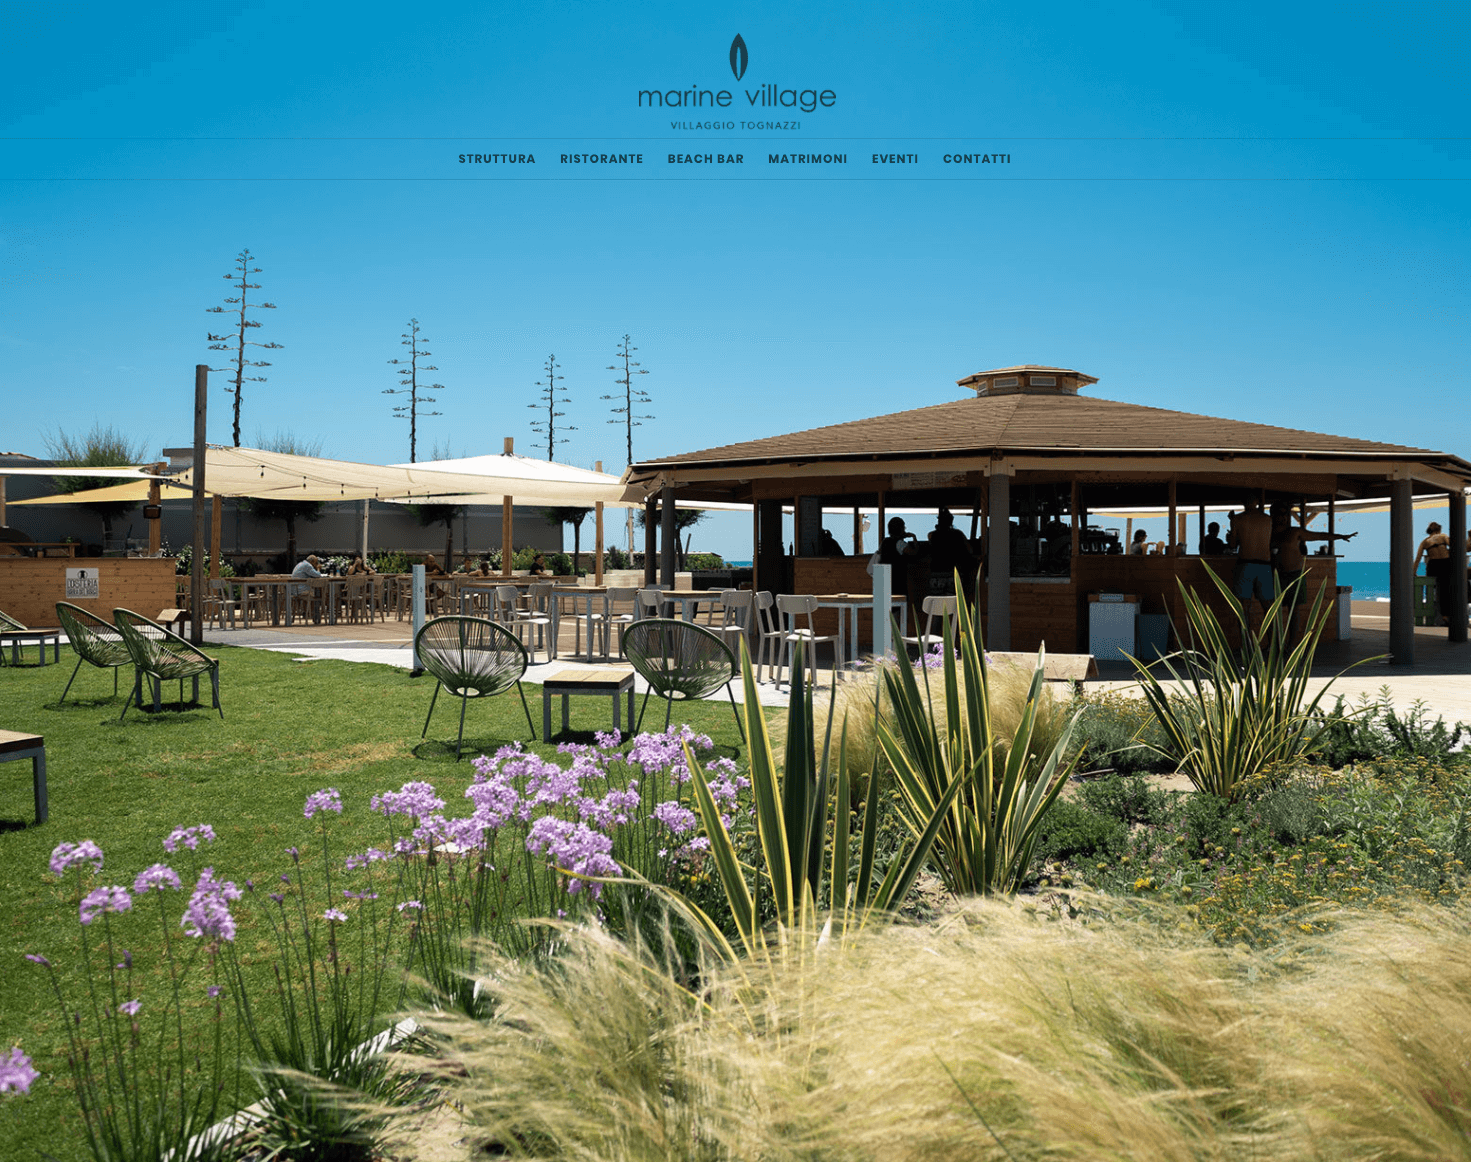 Verano 2020: el horno recobra vida en las playas y en las terrazas de los restaurantes. | Alfa Forni